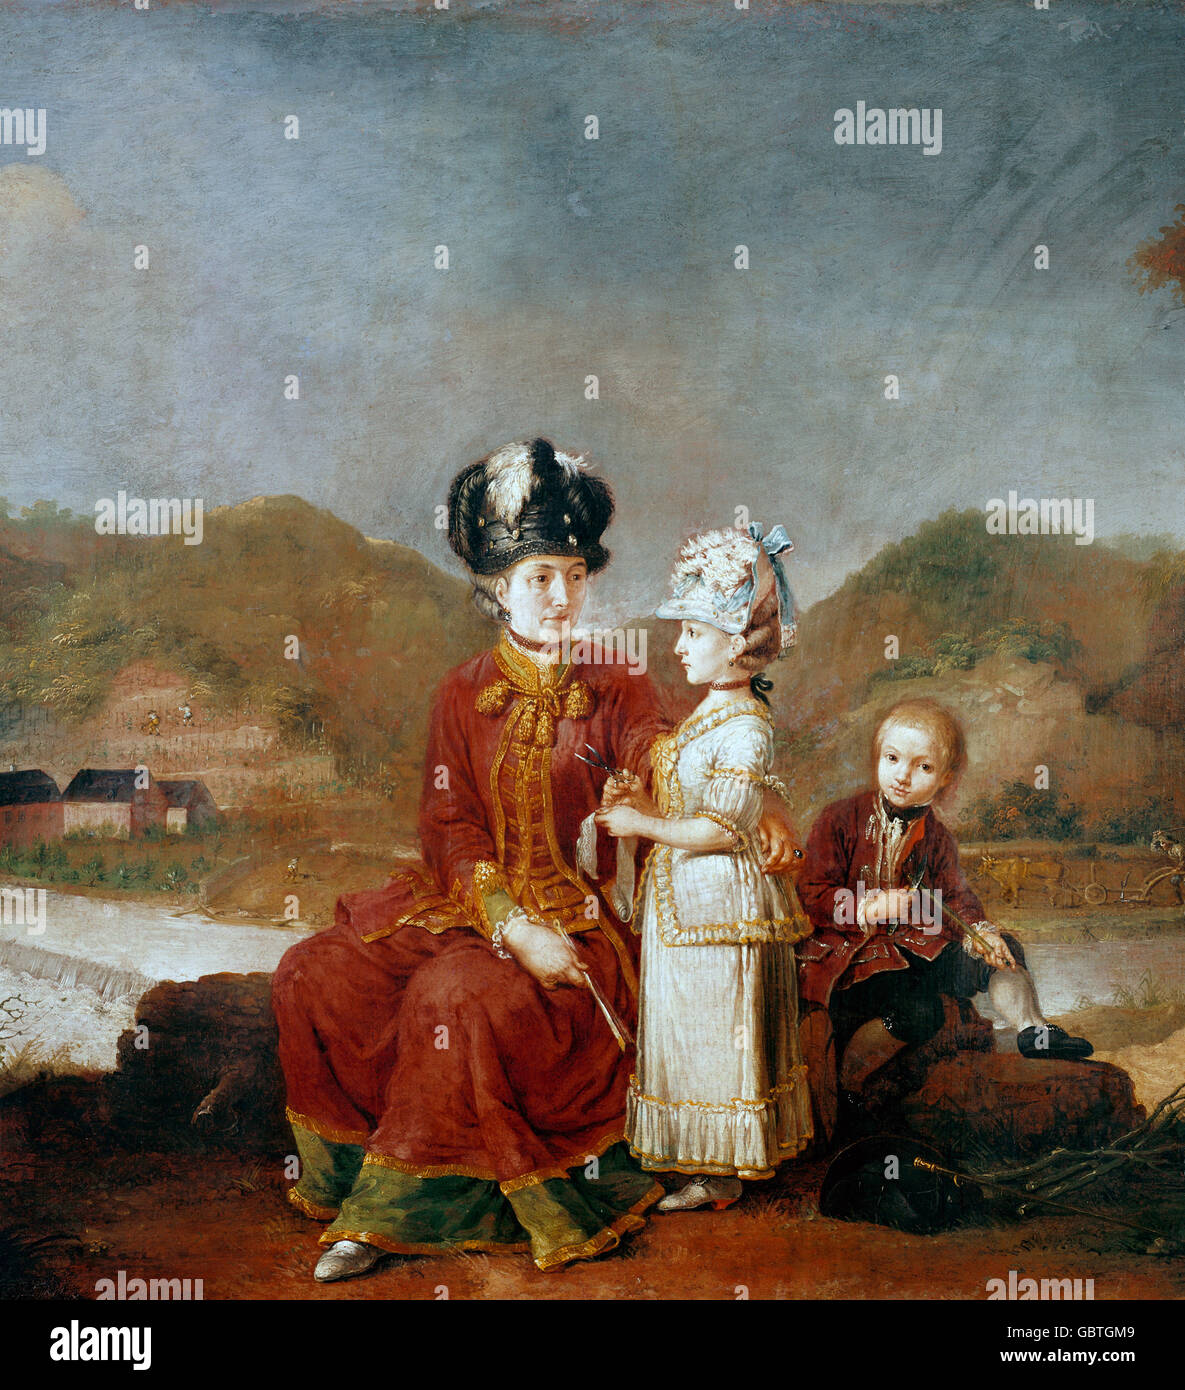 Belle arti, Traccia, Johann (1702 - 1762), pittura, "Ritratto di una donna con figli", 1771, olio su tela, 97 x 83 cm, Foto Stock